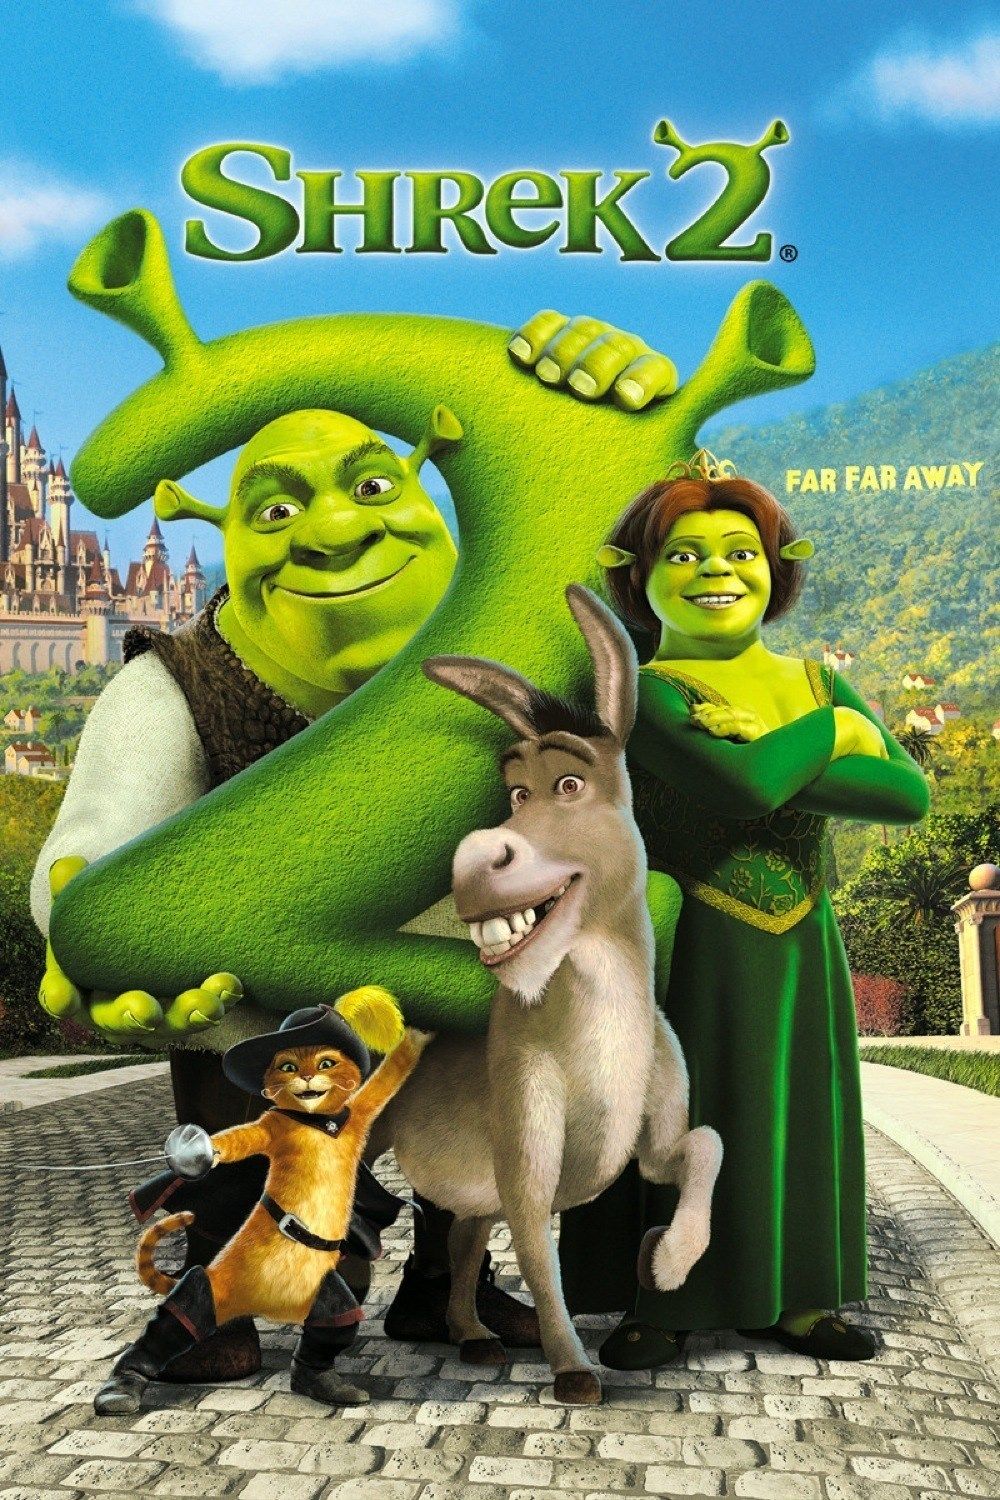 Shrek 2 wallpaper, Movie, HQ Shrek 2 pictureK Wallpaper 2019